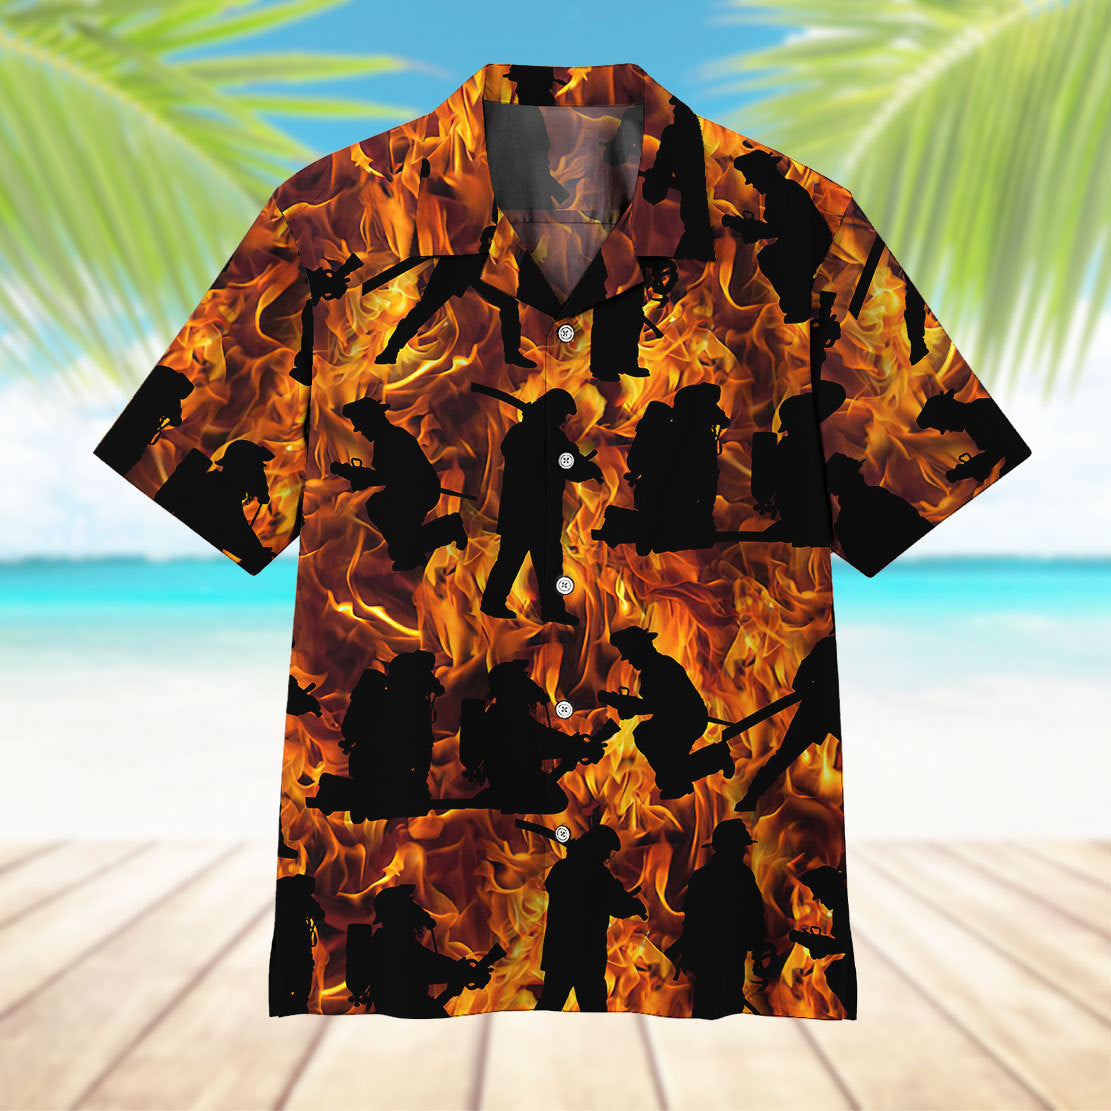 Fire Fighter Hawaii Shirt 11